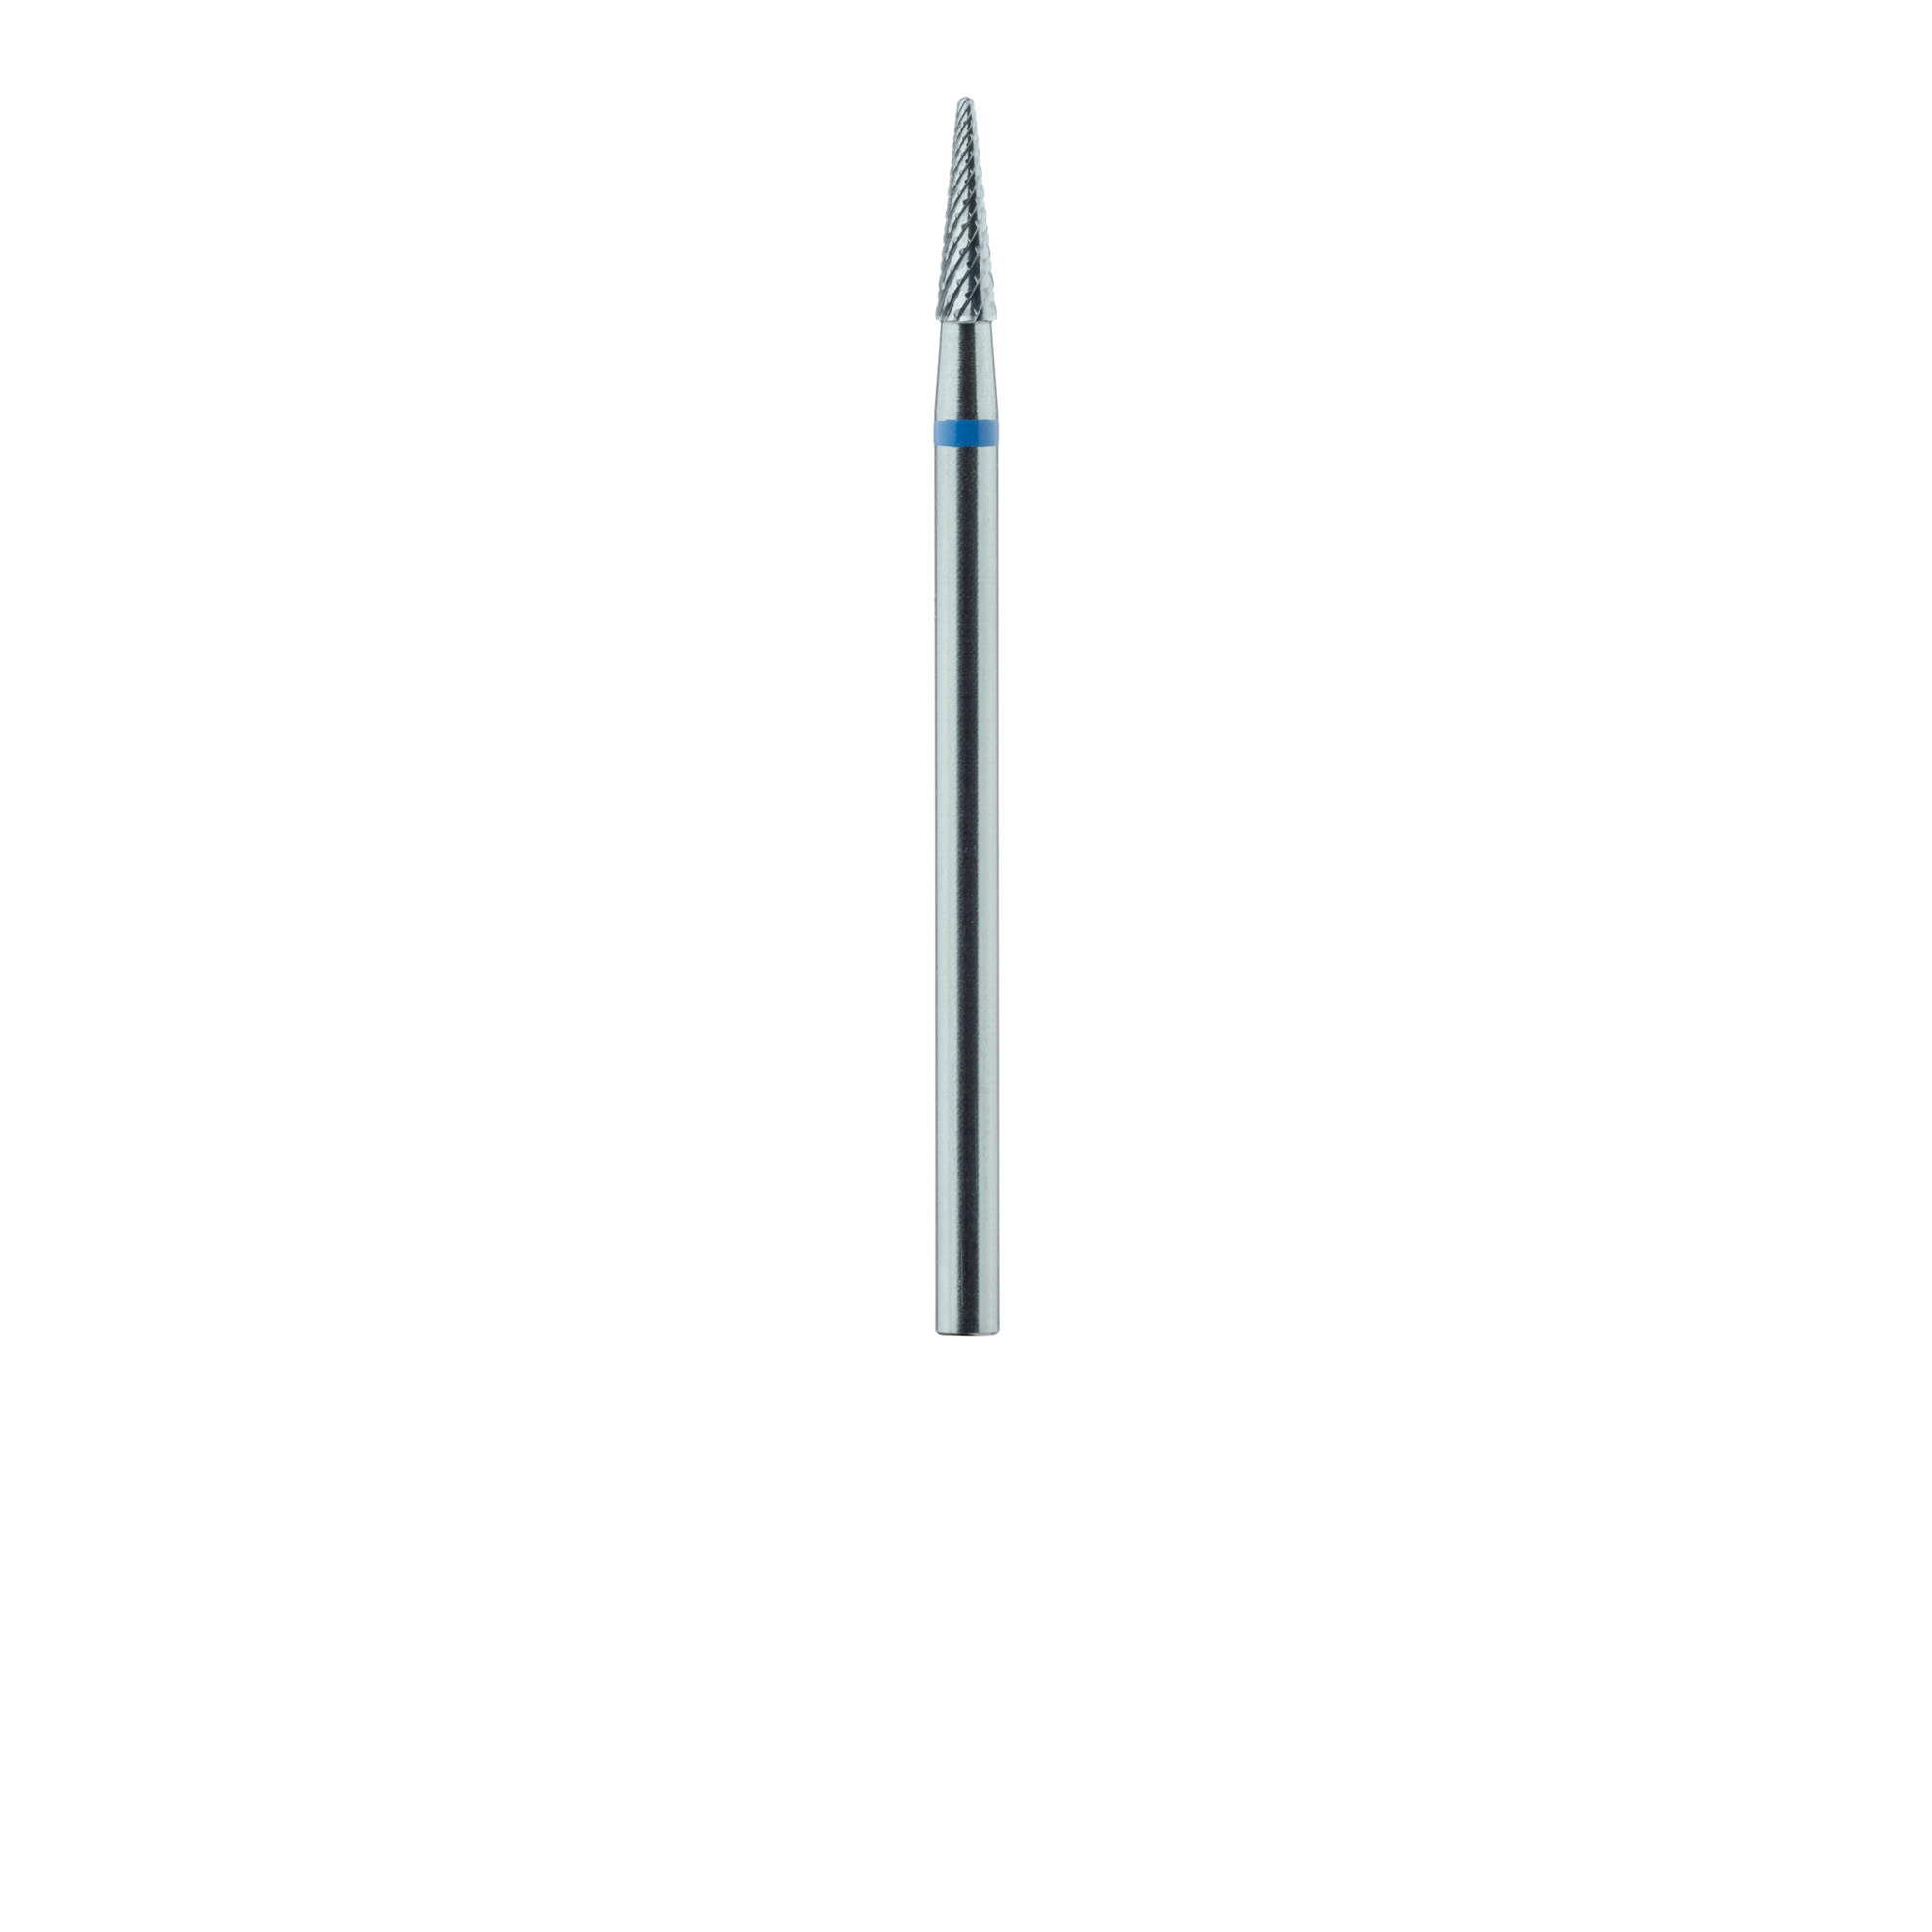 HM138GX-023-HP Carbide Cutter, Cross Cut, Round End Taper, 2.3mm Ø, Medium, HP